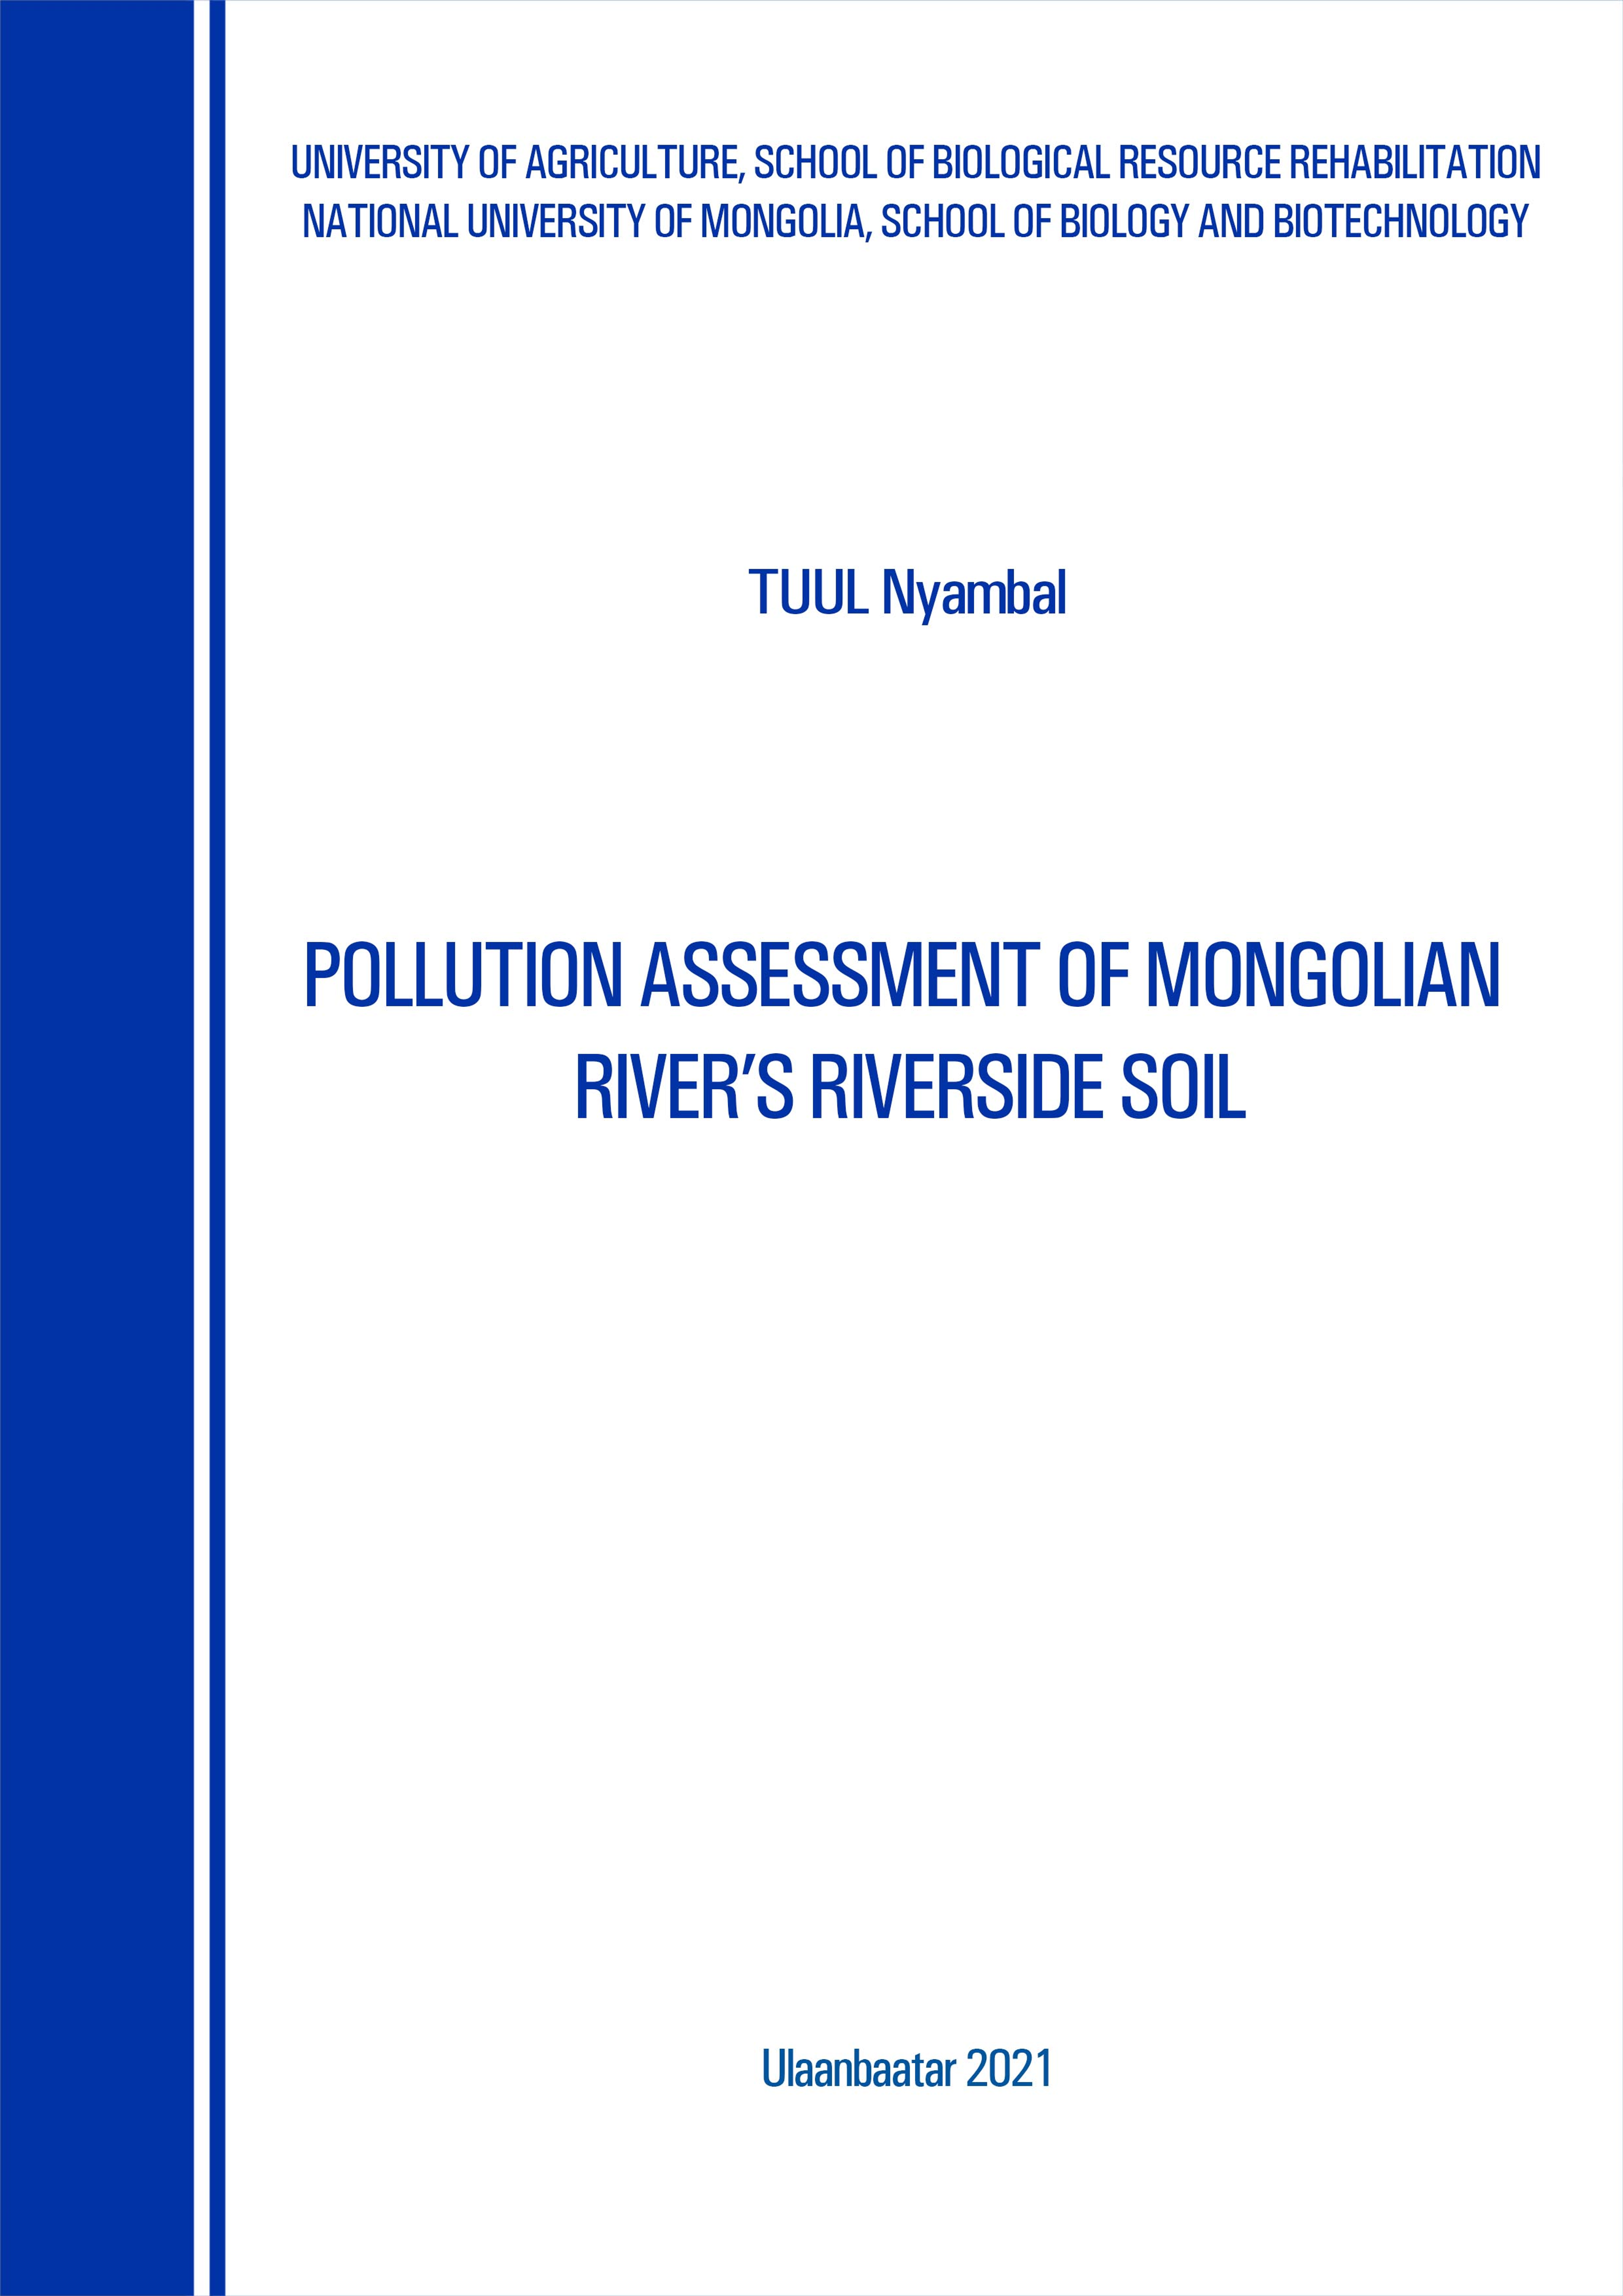 Pollution assessment of Mongolian river's riverside soil